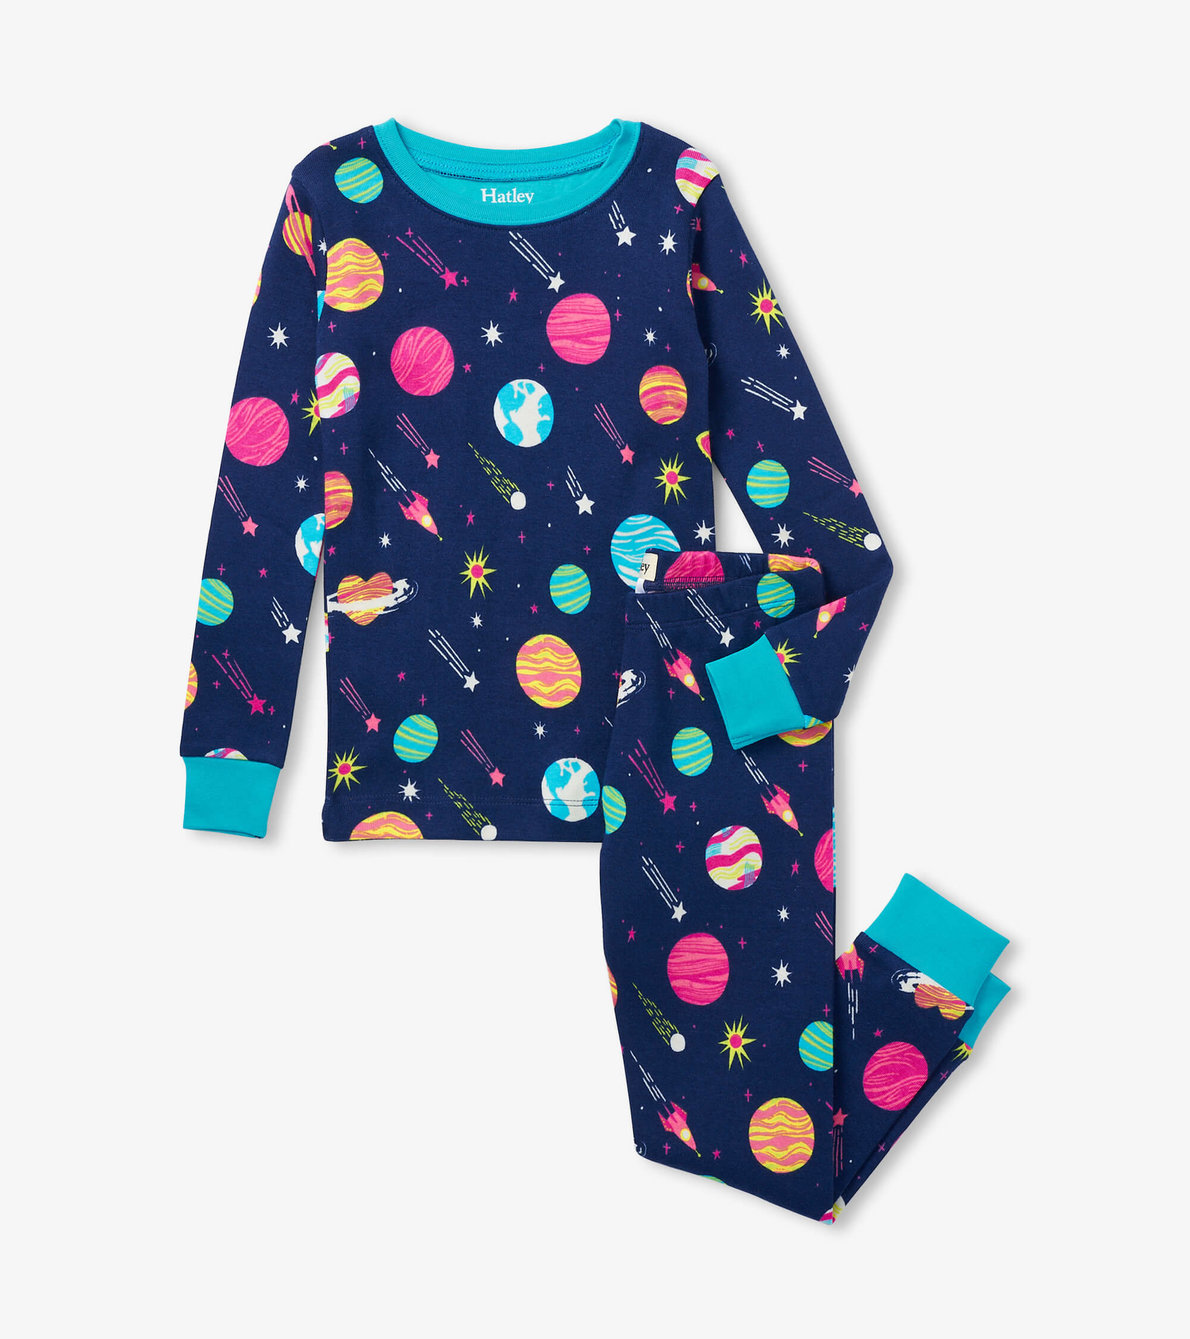 View larger image of Interstellar Kids Organic Cotton Pajama Set